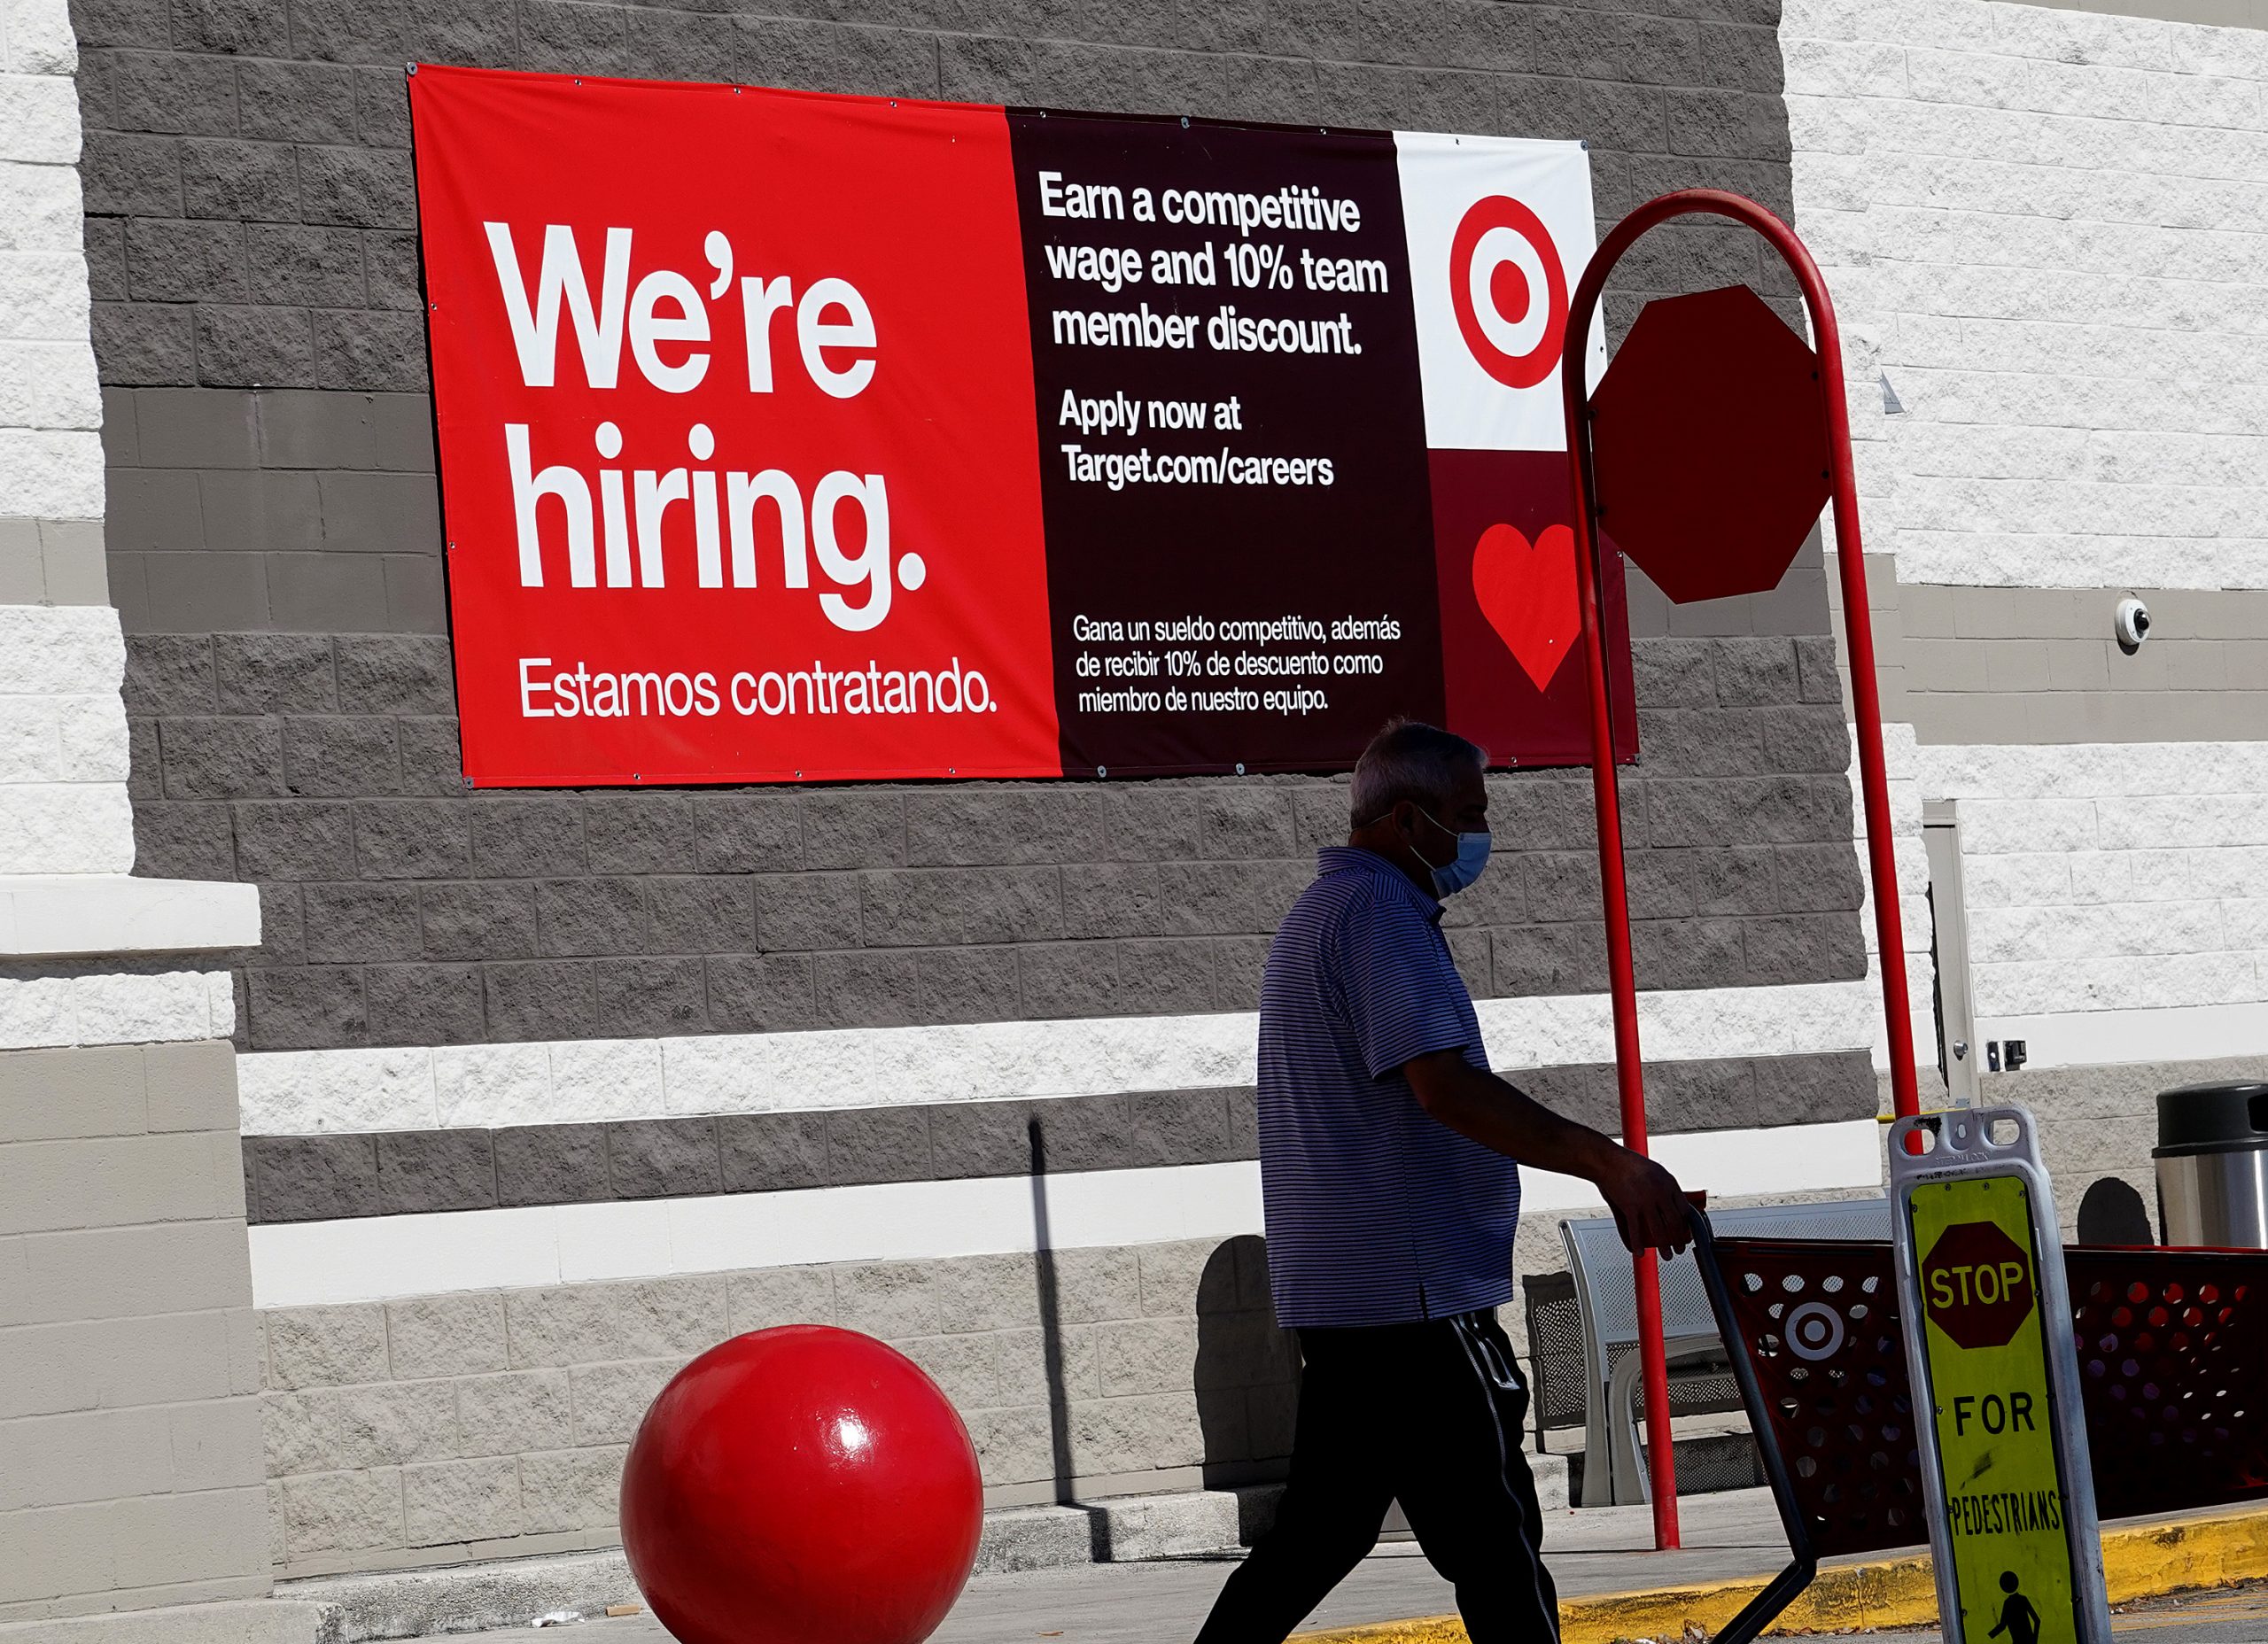 No recession here: Hot jobs market tames fears of slump